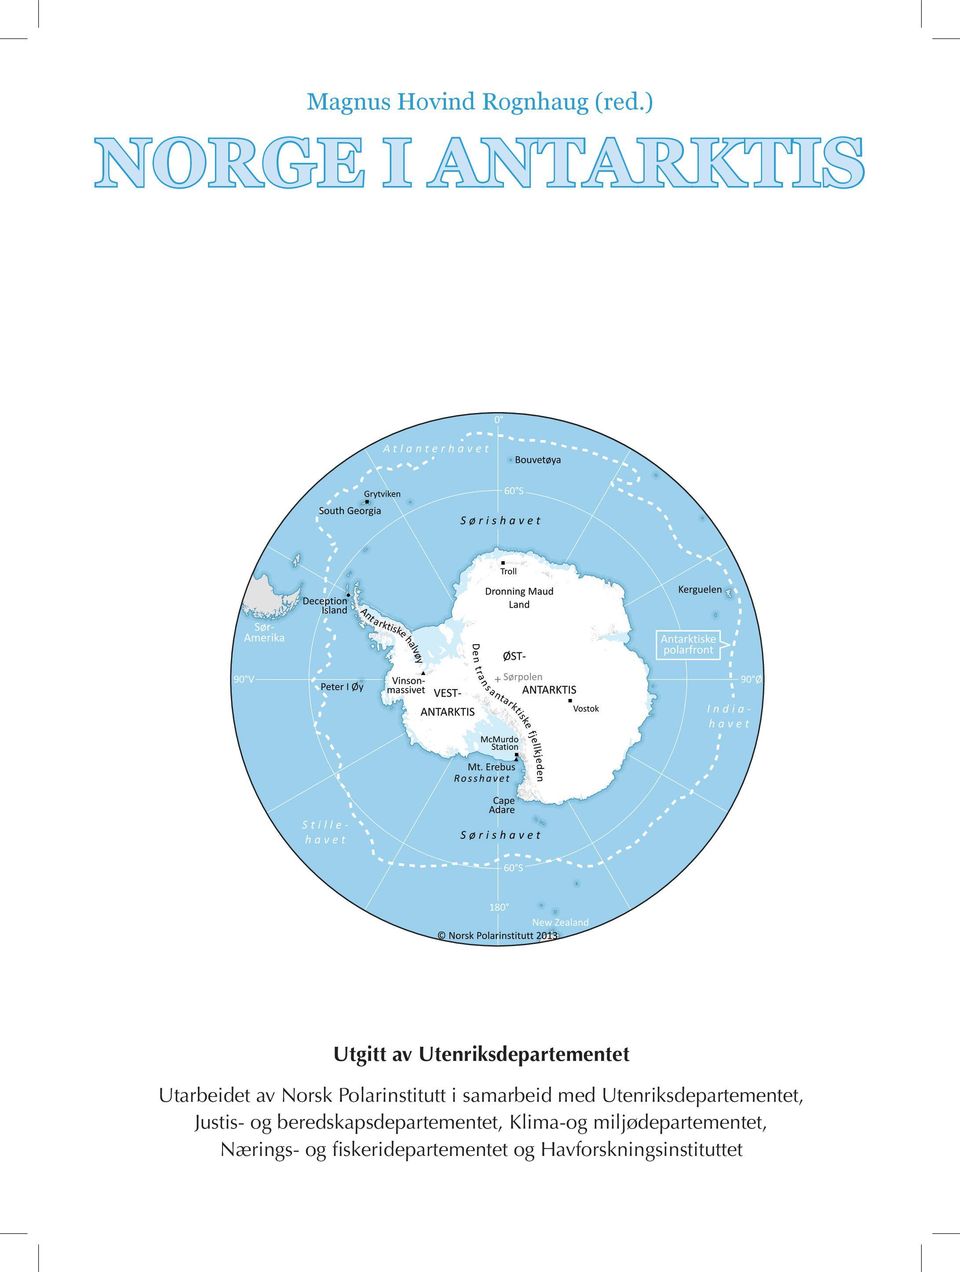 Norsk Polarinstitutt i samarbeid med Utenriksdepartementet, Justis- og